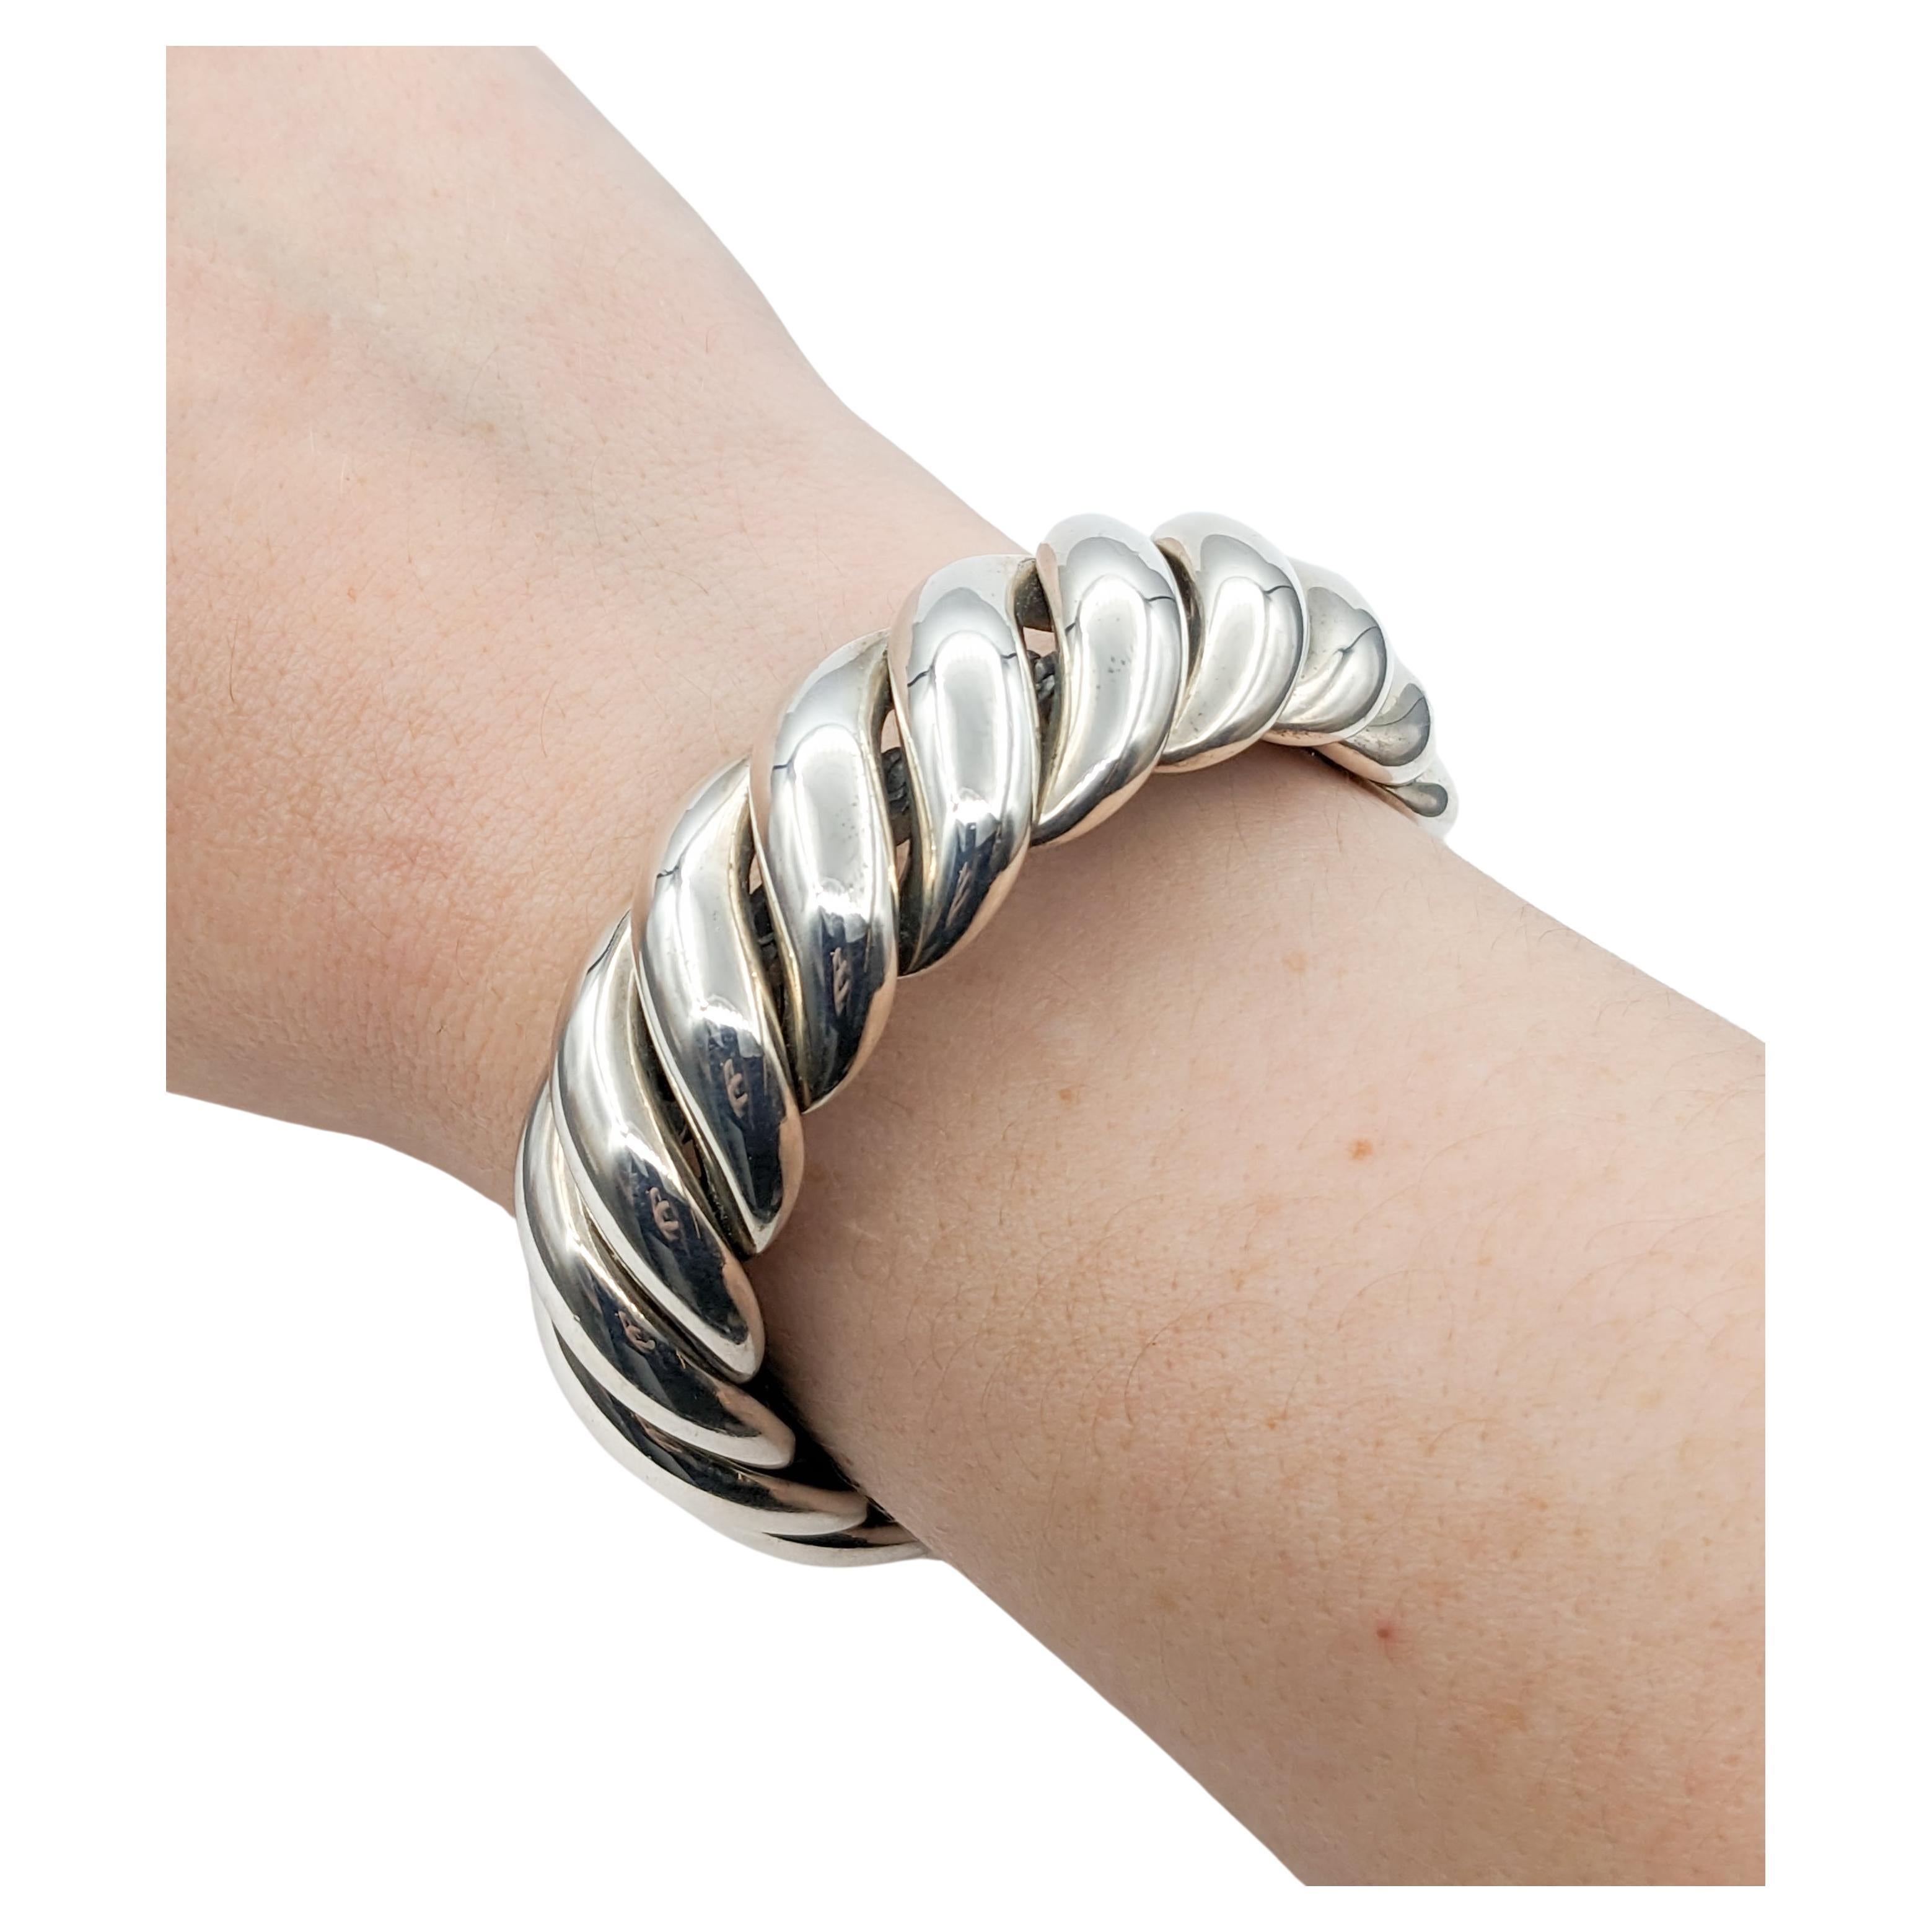 Stainless Steel Men's, Women's, Teen's Cuff Bracelet Reversible